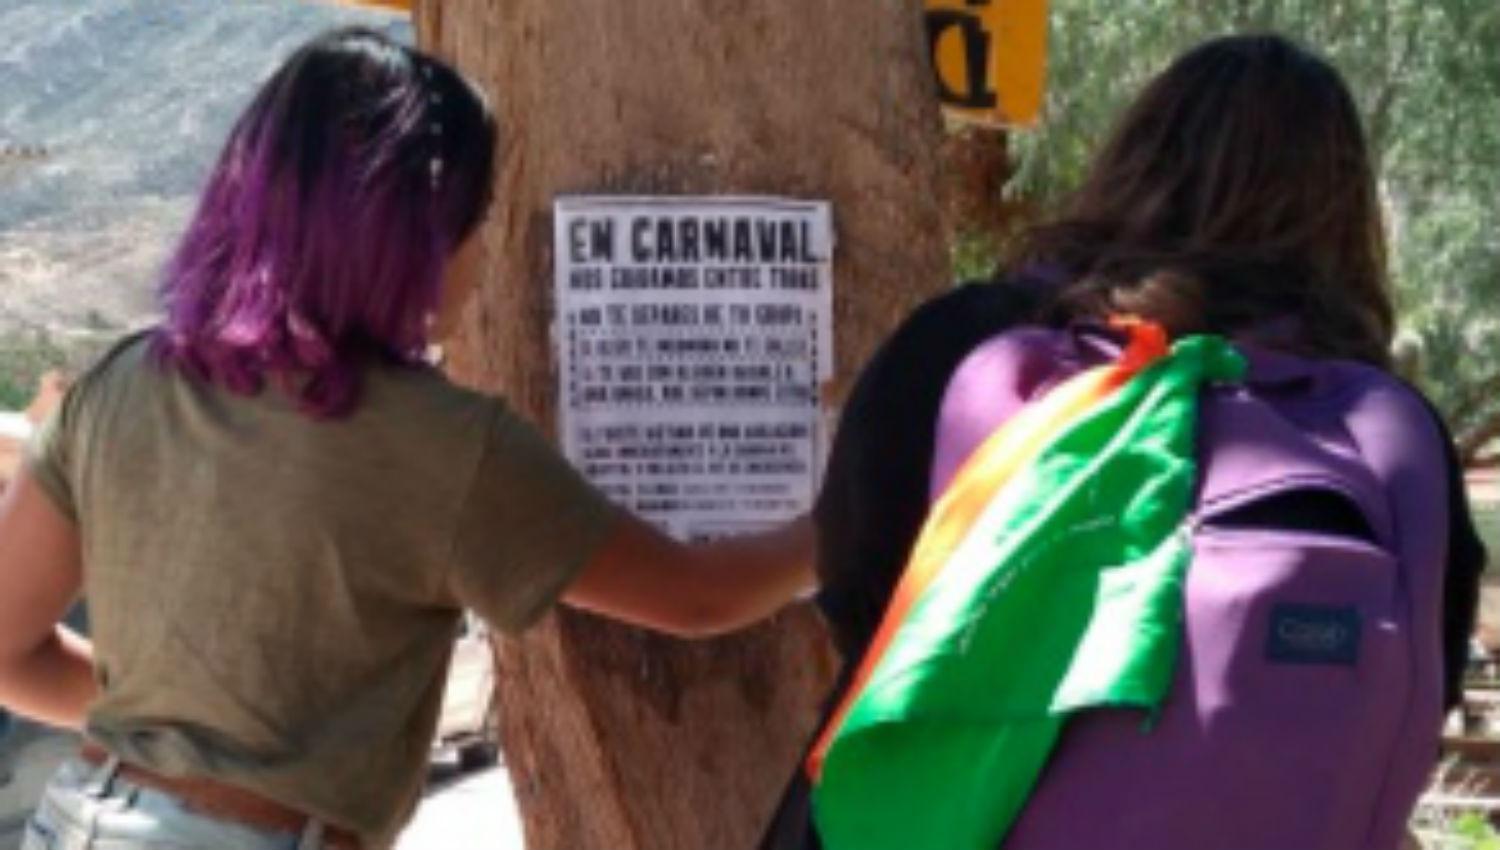 Afiches y spots contra la violencia de género en el carnaval de Jujuy